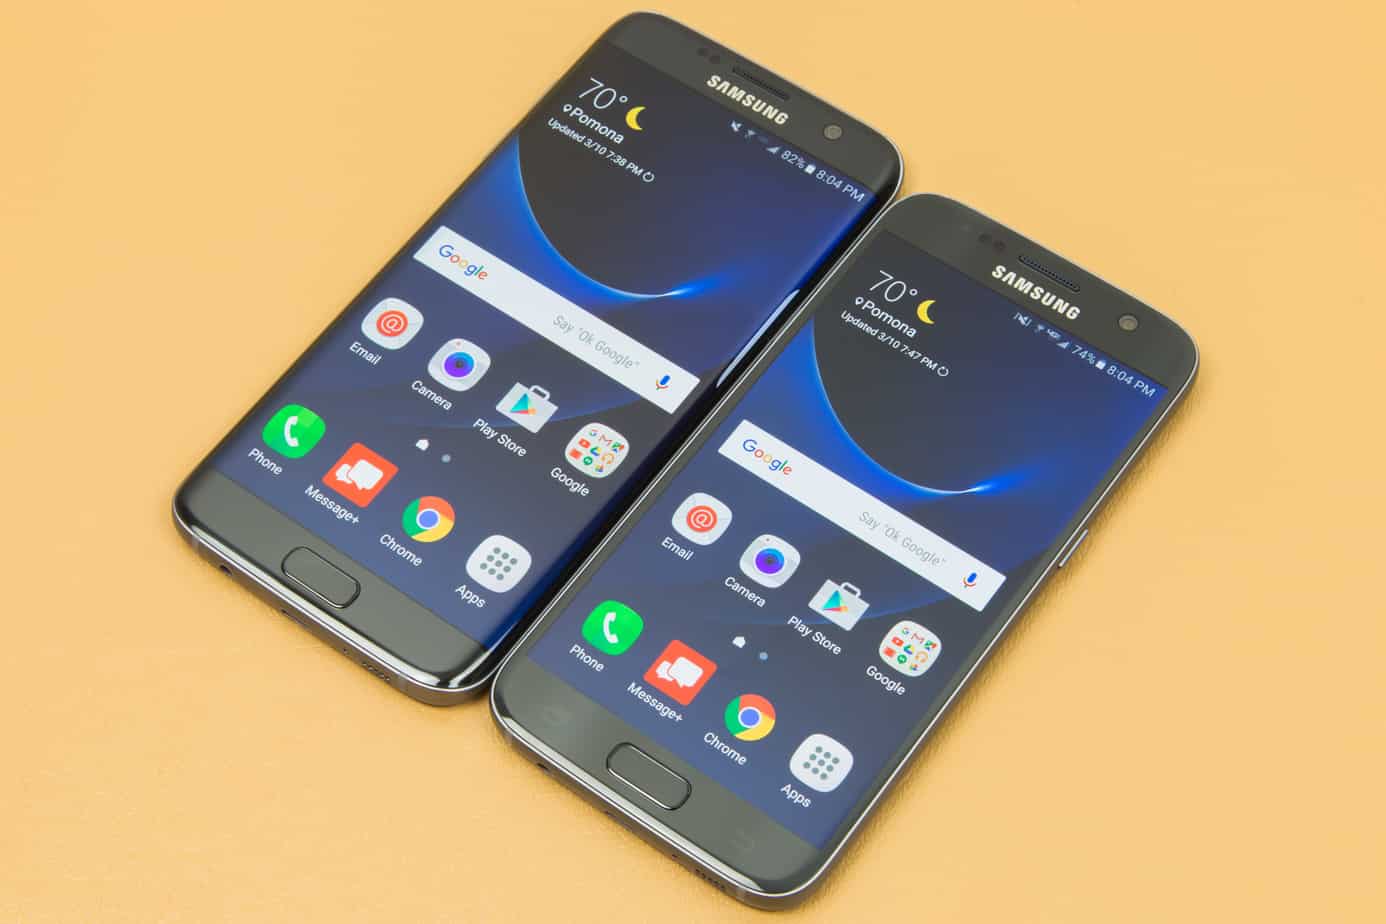 Samsung Galaxy S7 Update